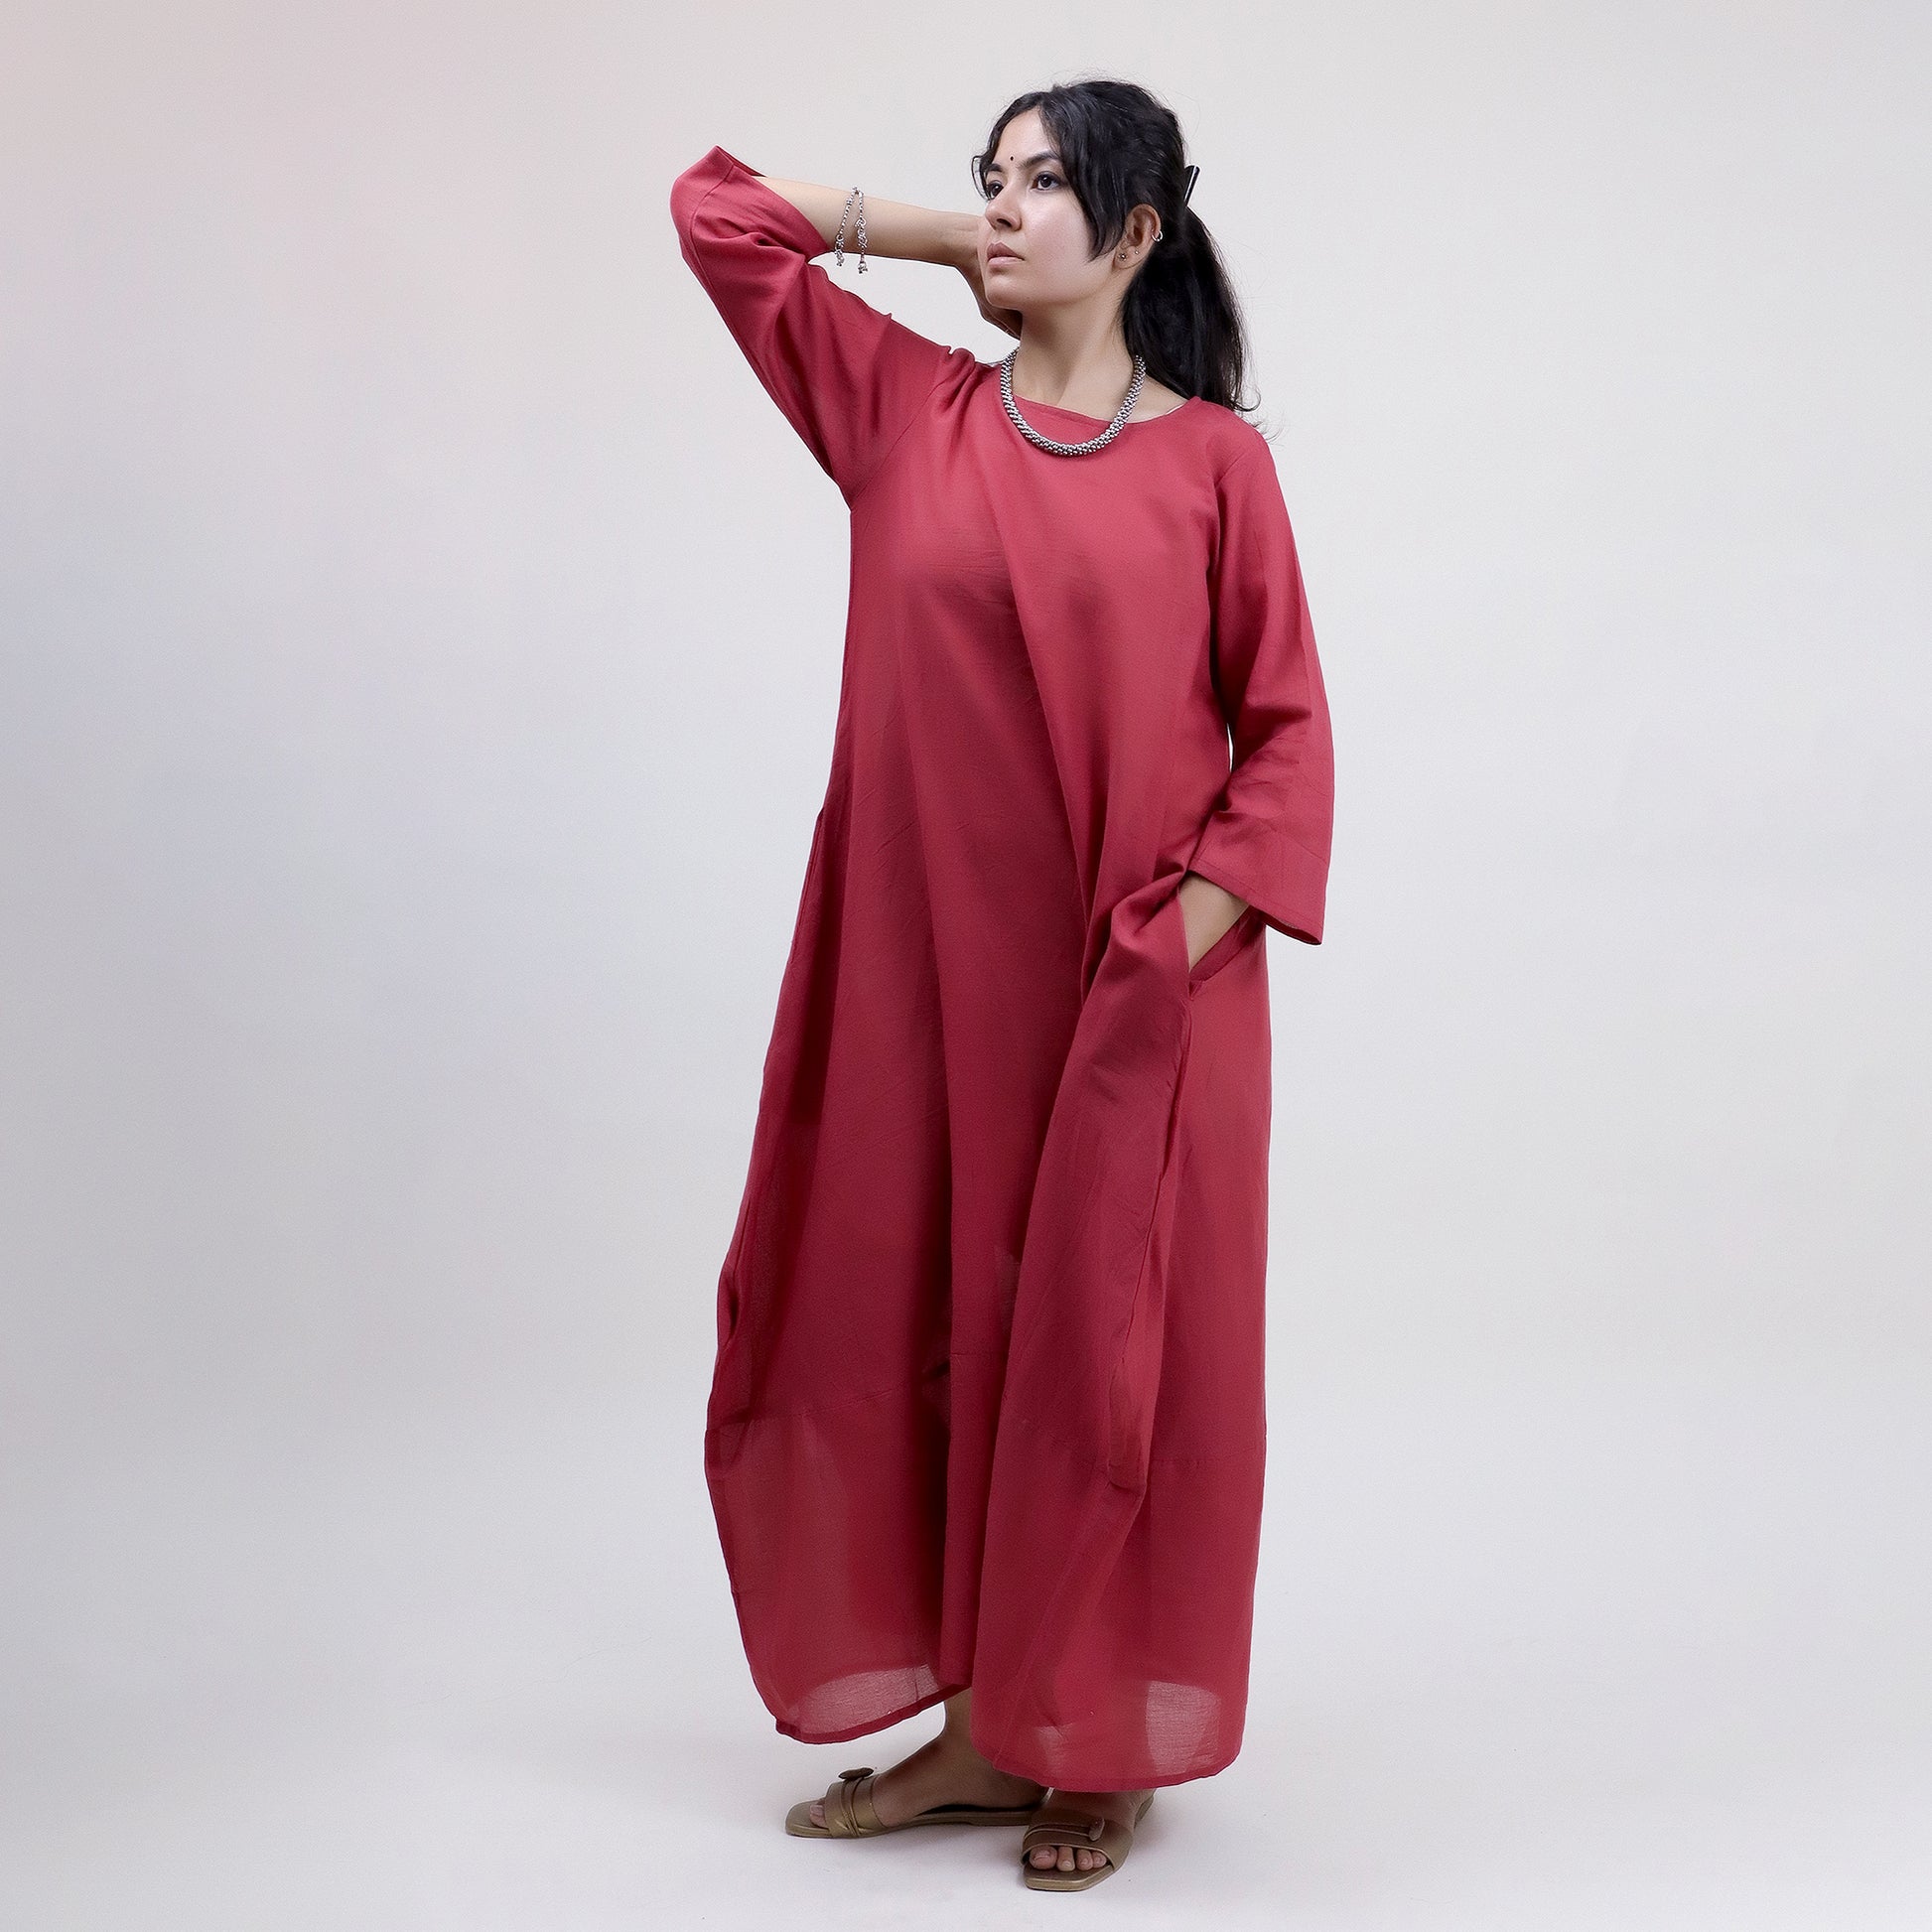 maroon solid round neck women kaftan dress online